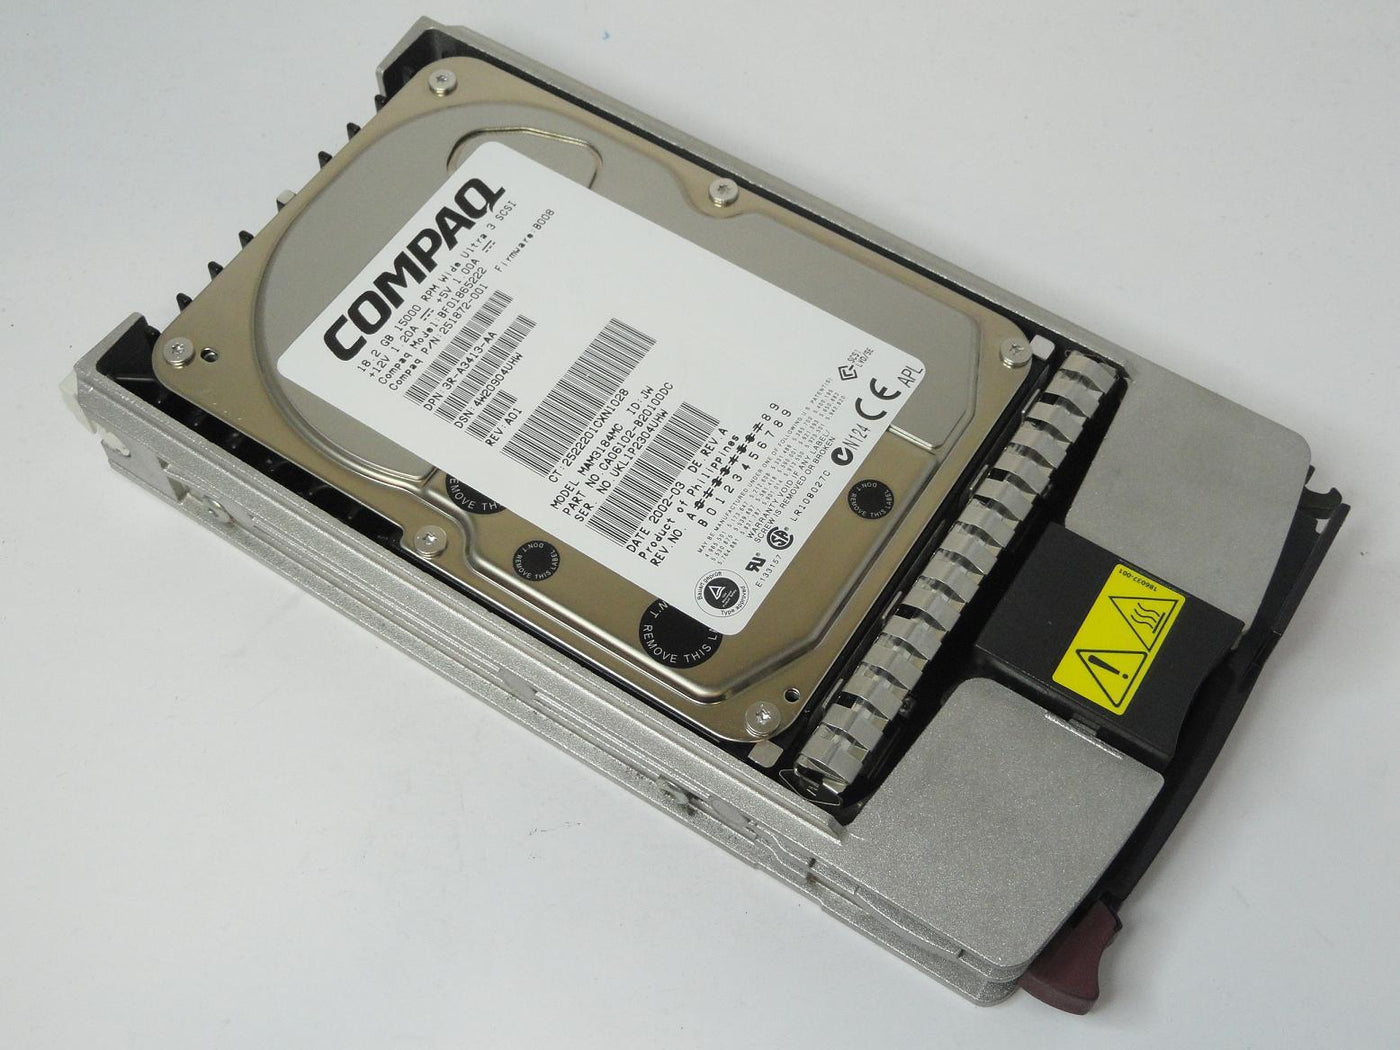 CA06102-B20100DC - Fujistu Compaq 18.2GB SCSI 80 Pin 15Krpm 3.5in HDD in Caddy - Refurbished